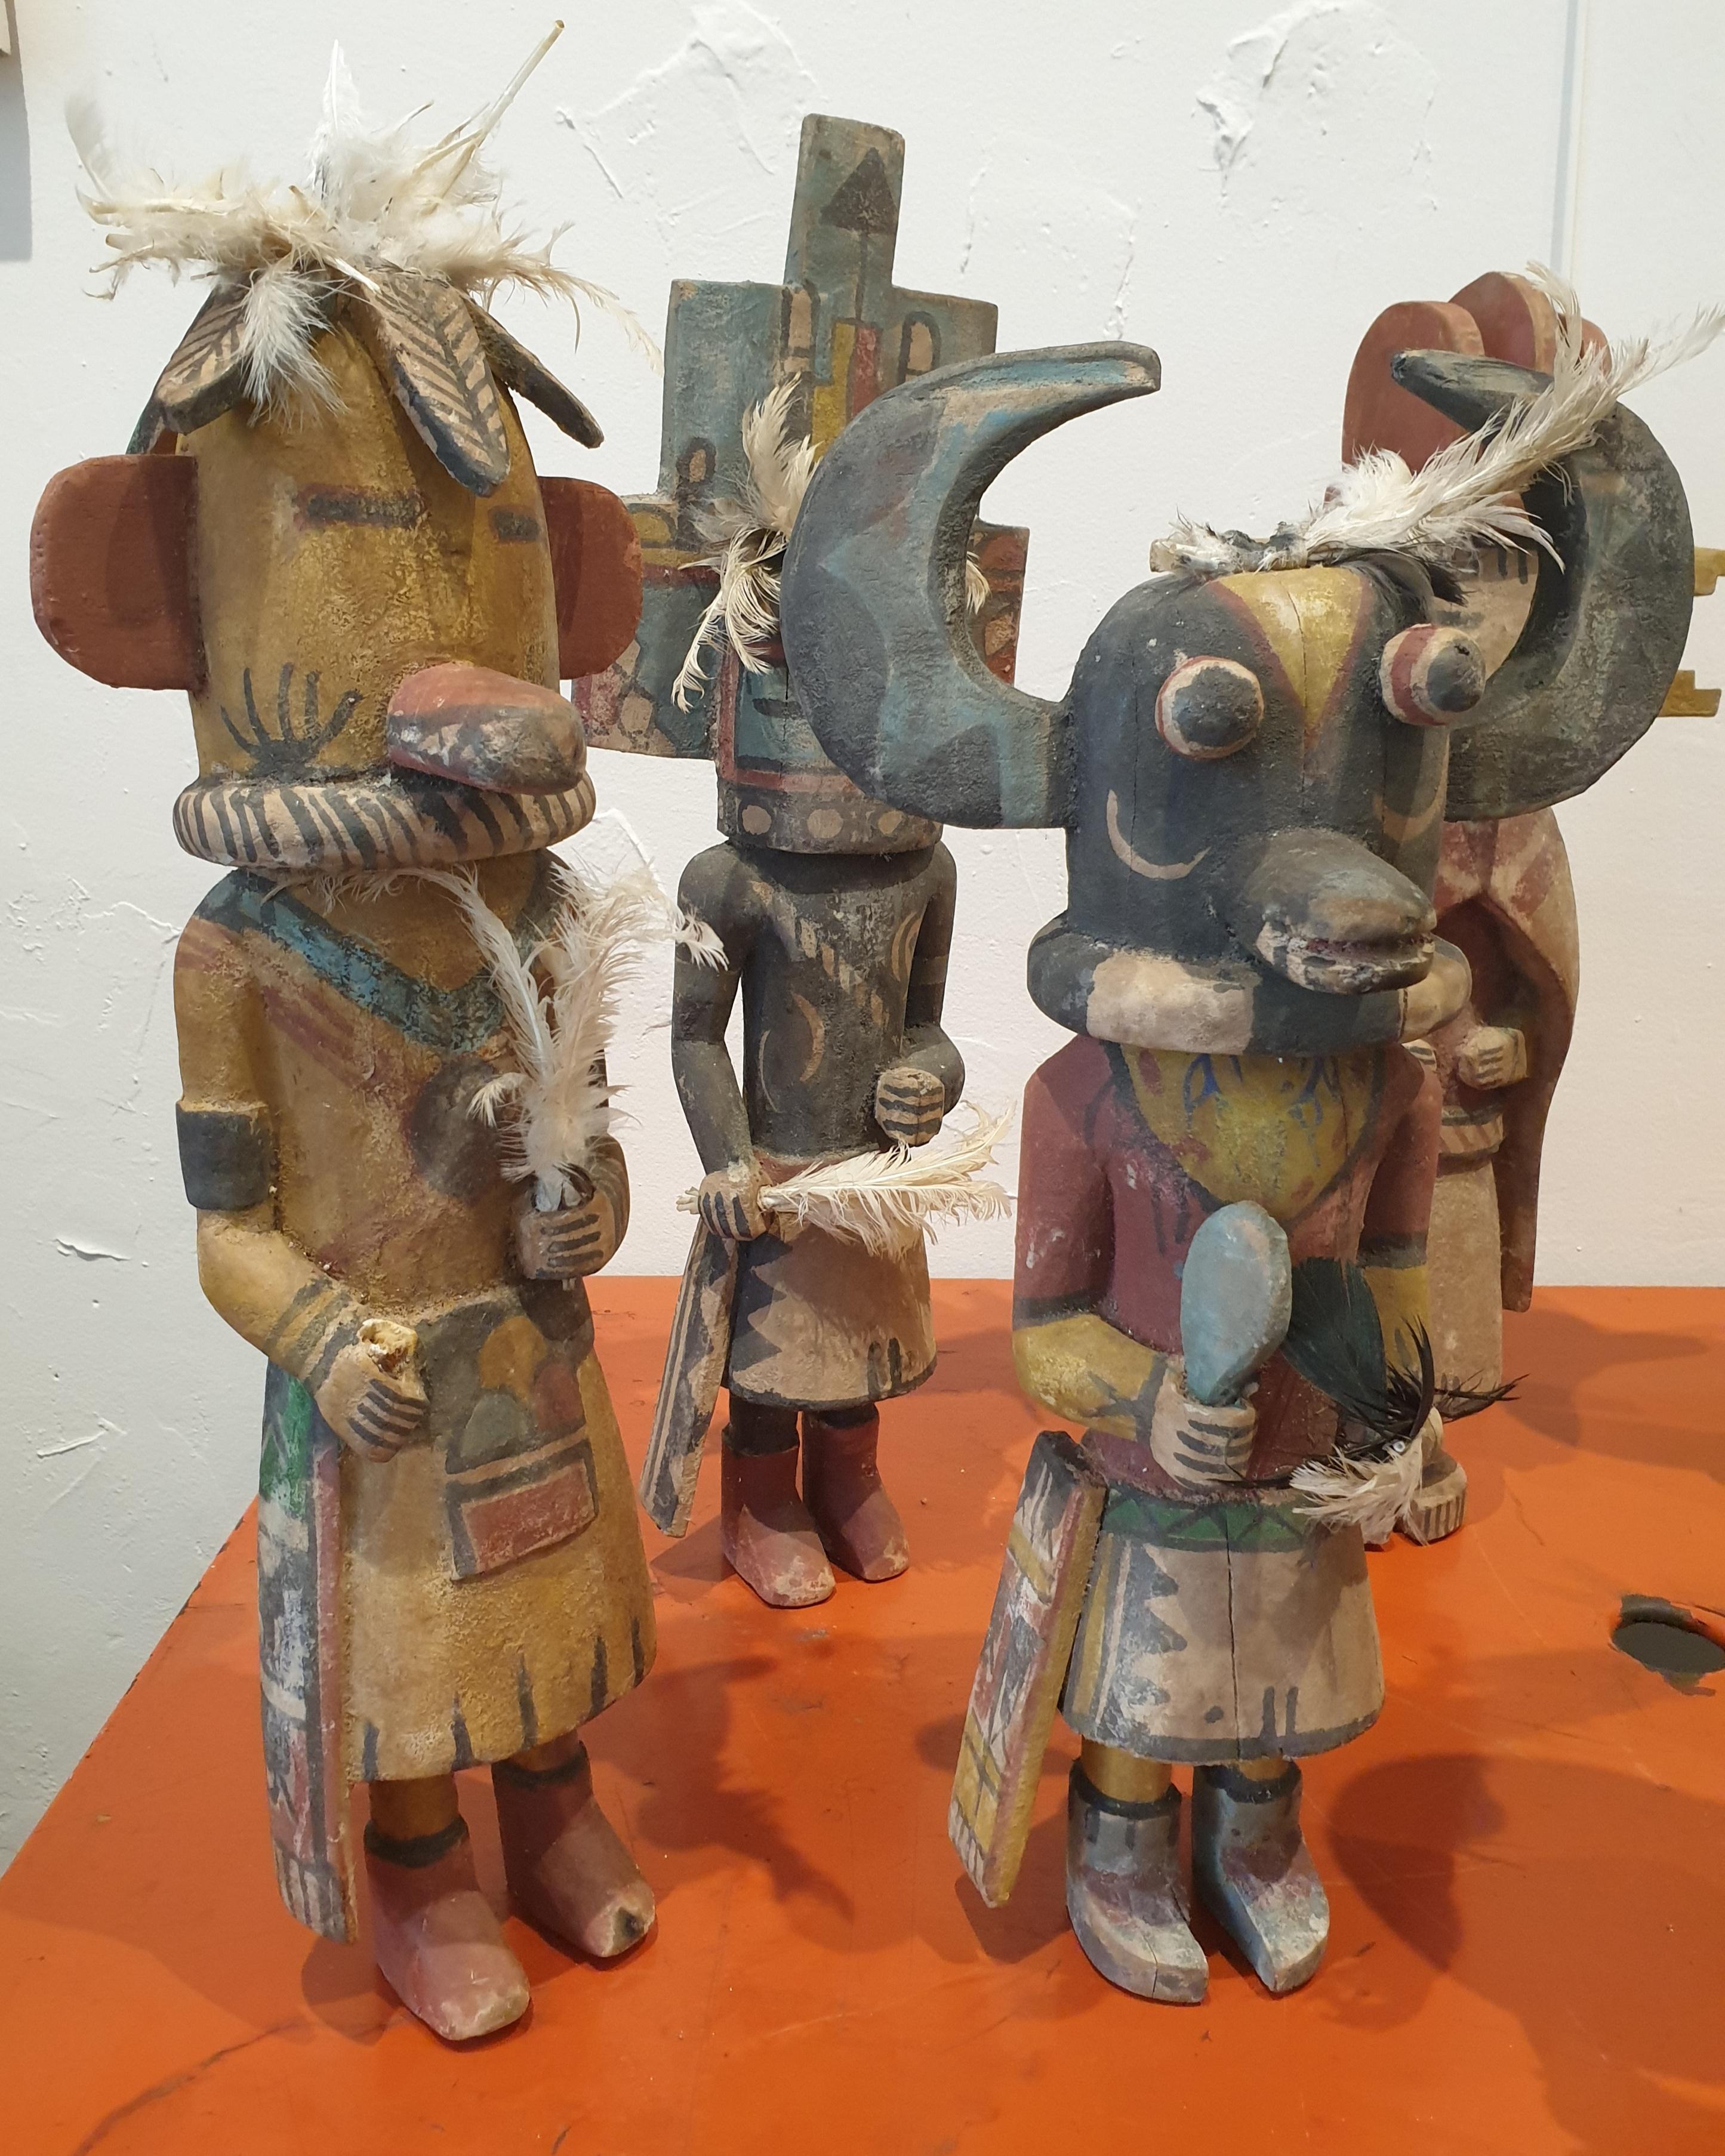 Eine Gruppe von acht aus Holz geschnitzten und bemalten Bildnisfiguren der nordamerikanischen Ureinwohner, Hopi Katsina oder Kachina-Puppen.

Acht wunderbar verspielte, farbenfrohe und sehr individuelle Hopi Katsina-Puppen. Jede Puppe steht für